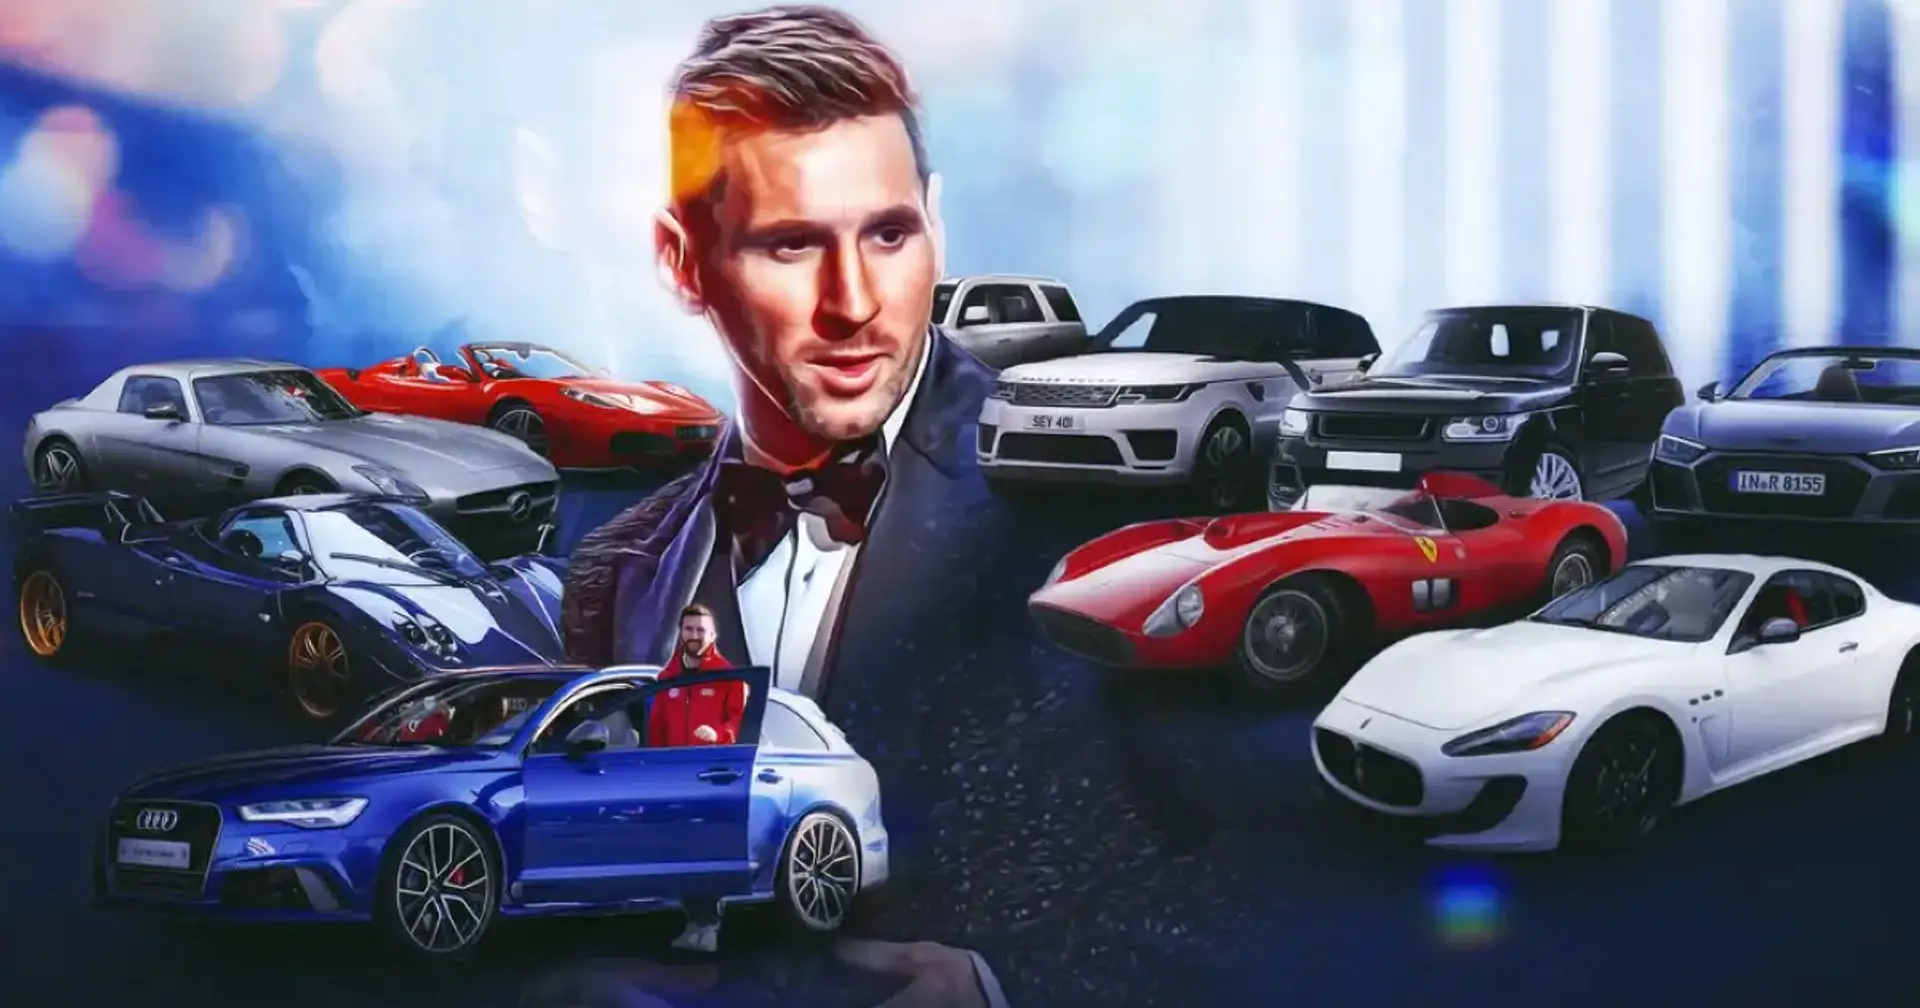 Einblicke in die unglaubliche Autosammlung von Lionel Messi - vom 36-Millionen-Dollar-Ferrari bis zu drei Audis